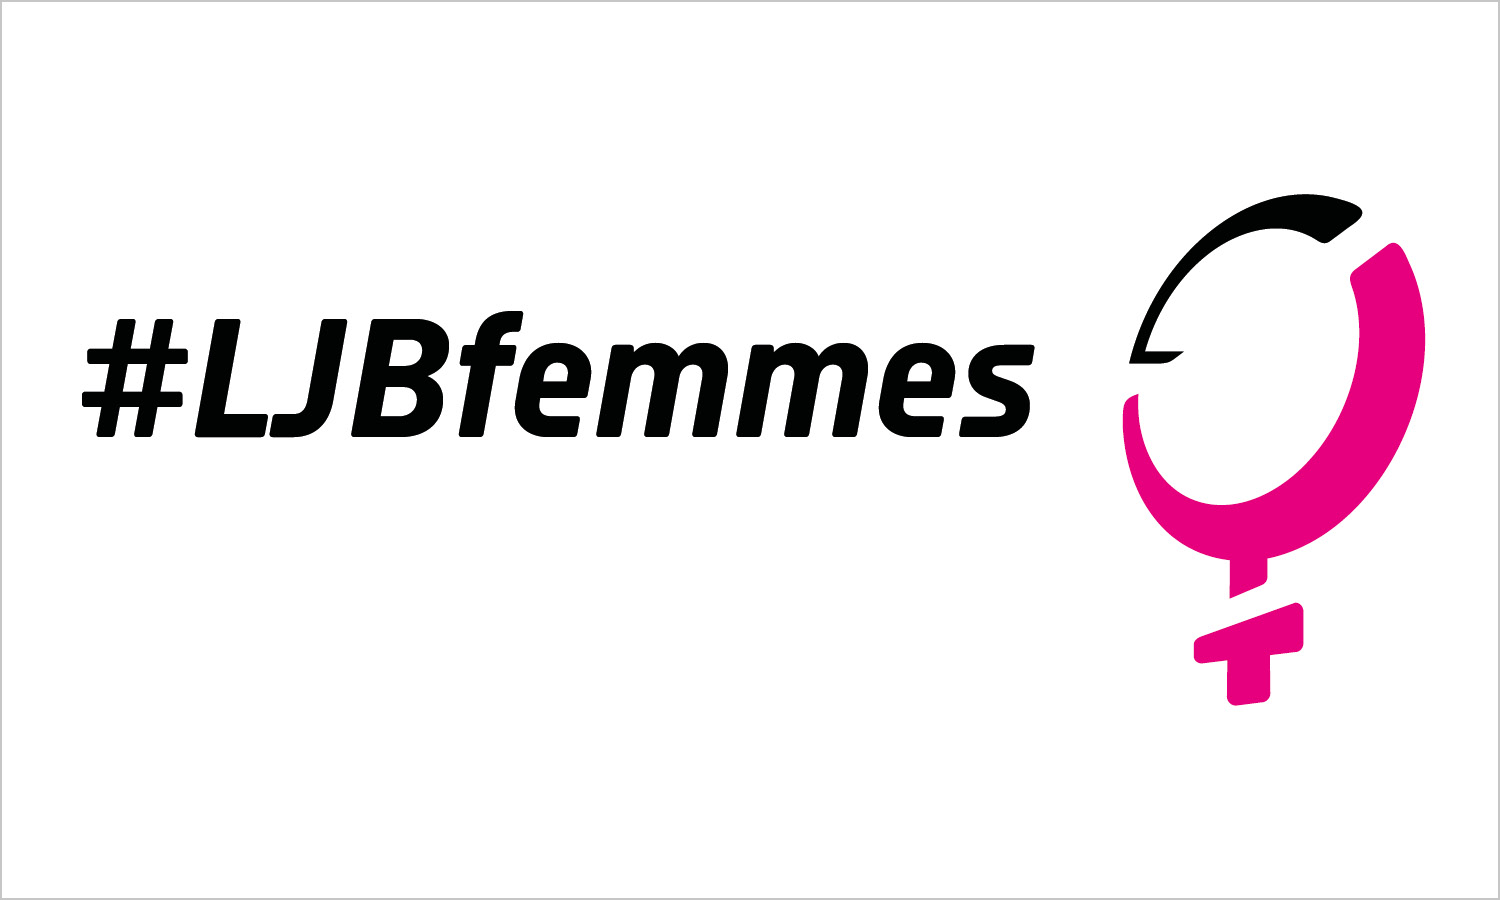 Das Logo der LJB Femmes: unten Text #LJBfemmes, darüber eine Kombination aus dem Logo von Little John Bikes und dem Symbol für weiblich